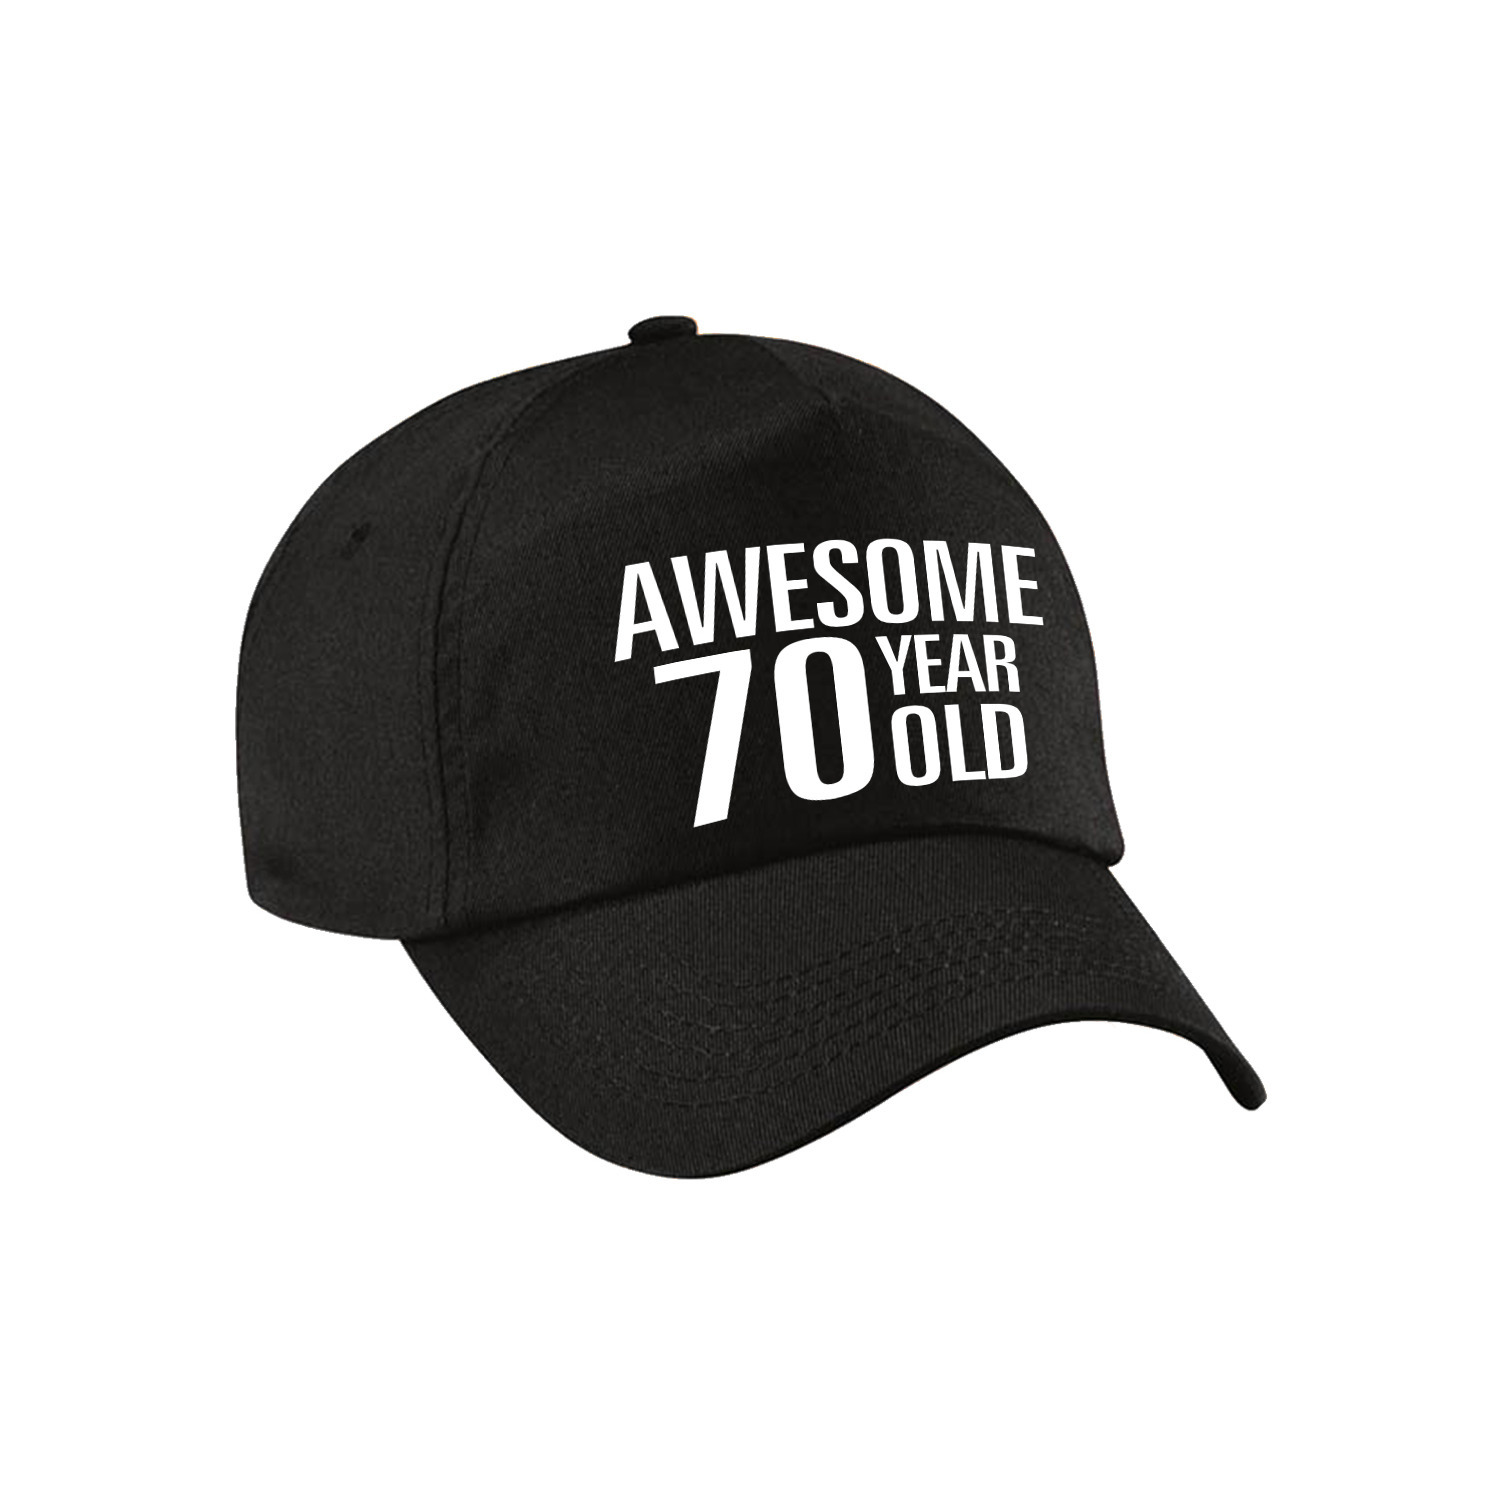 Awesome 70 year old verjaardag pet / cap zwart voor dames en heren